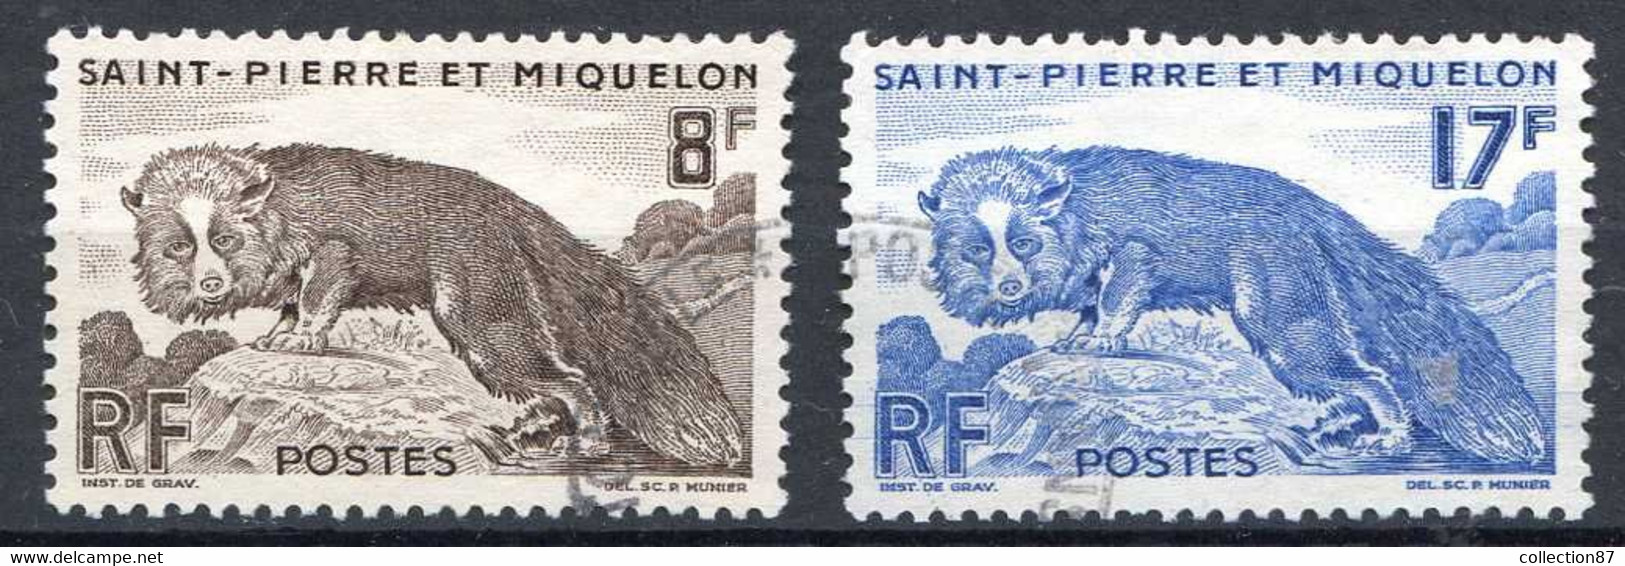 SAINT PIERRE Et MIQUELON < N° 345-346 Ø Oblitéré Used Ø Cote 4.50 € < RENARD ARGENTÉ - Used Stamps